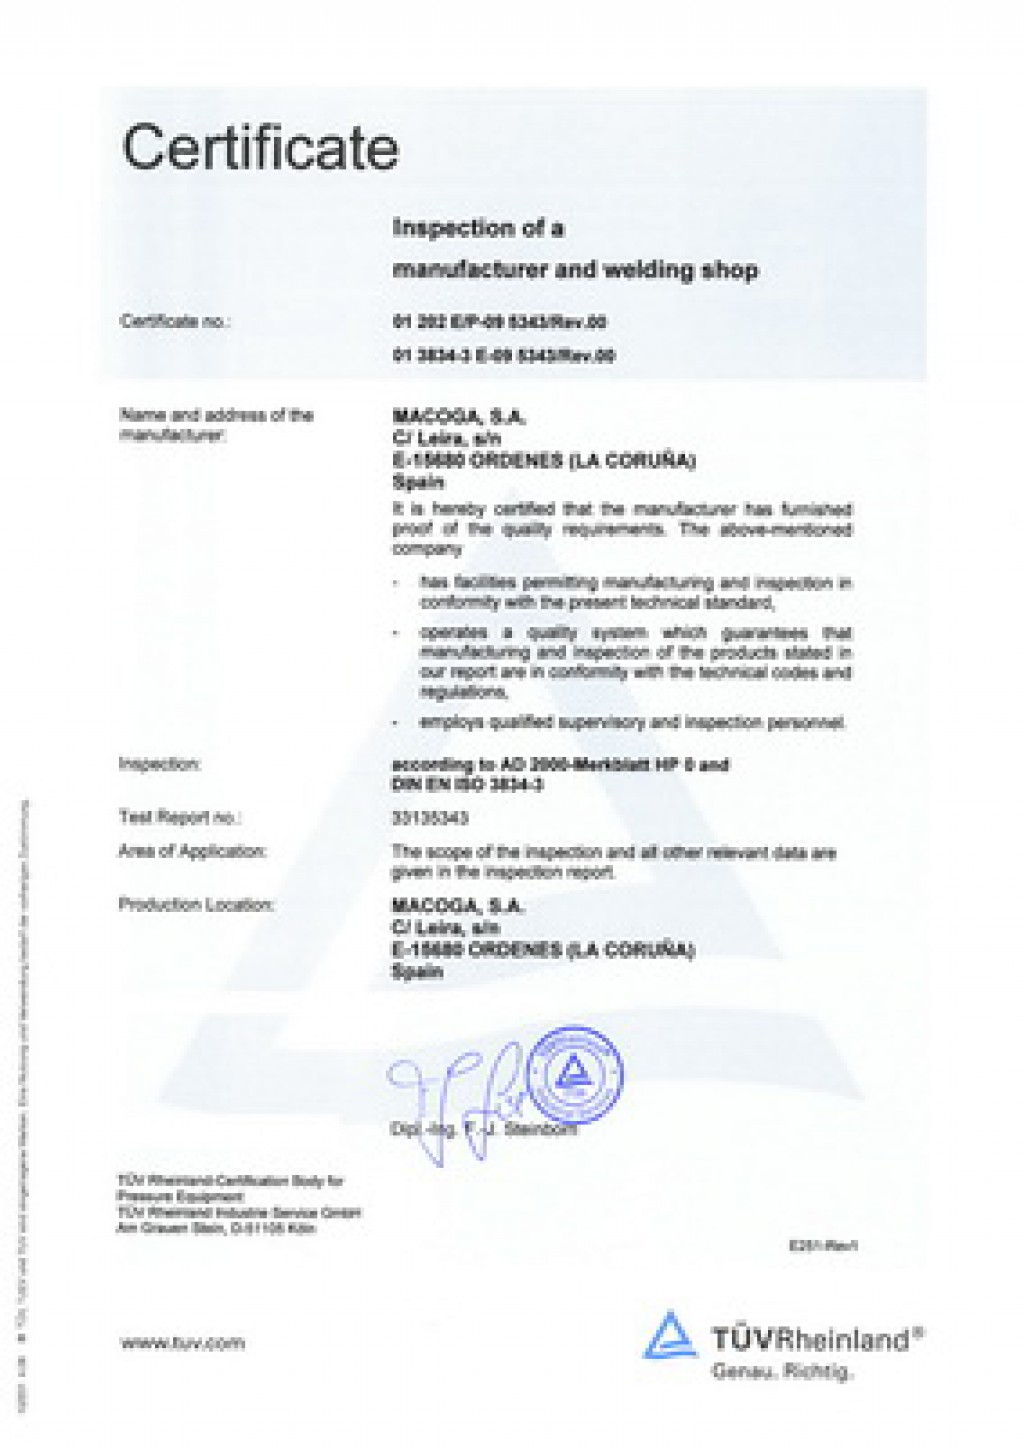 Enero 2013 - Certificación MACOGA según ISO 3834 para soldadura por fusión de materiales metálicos